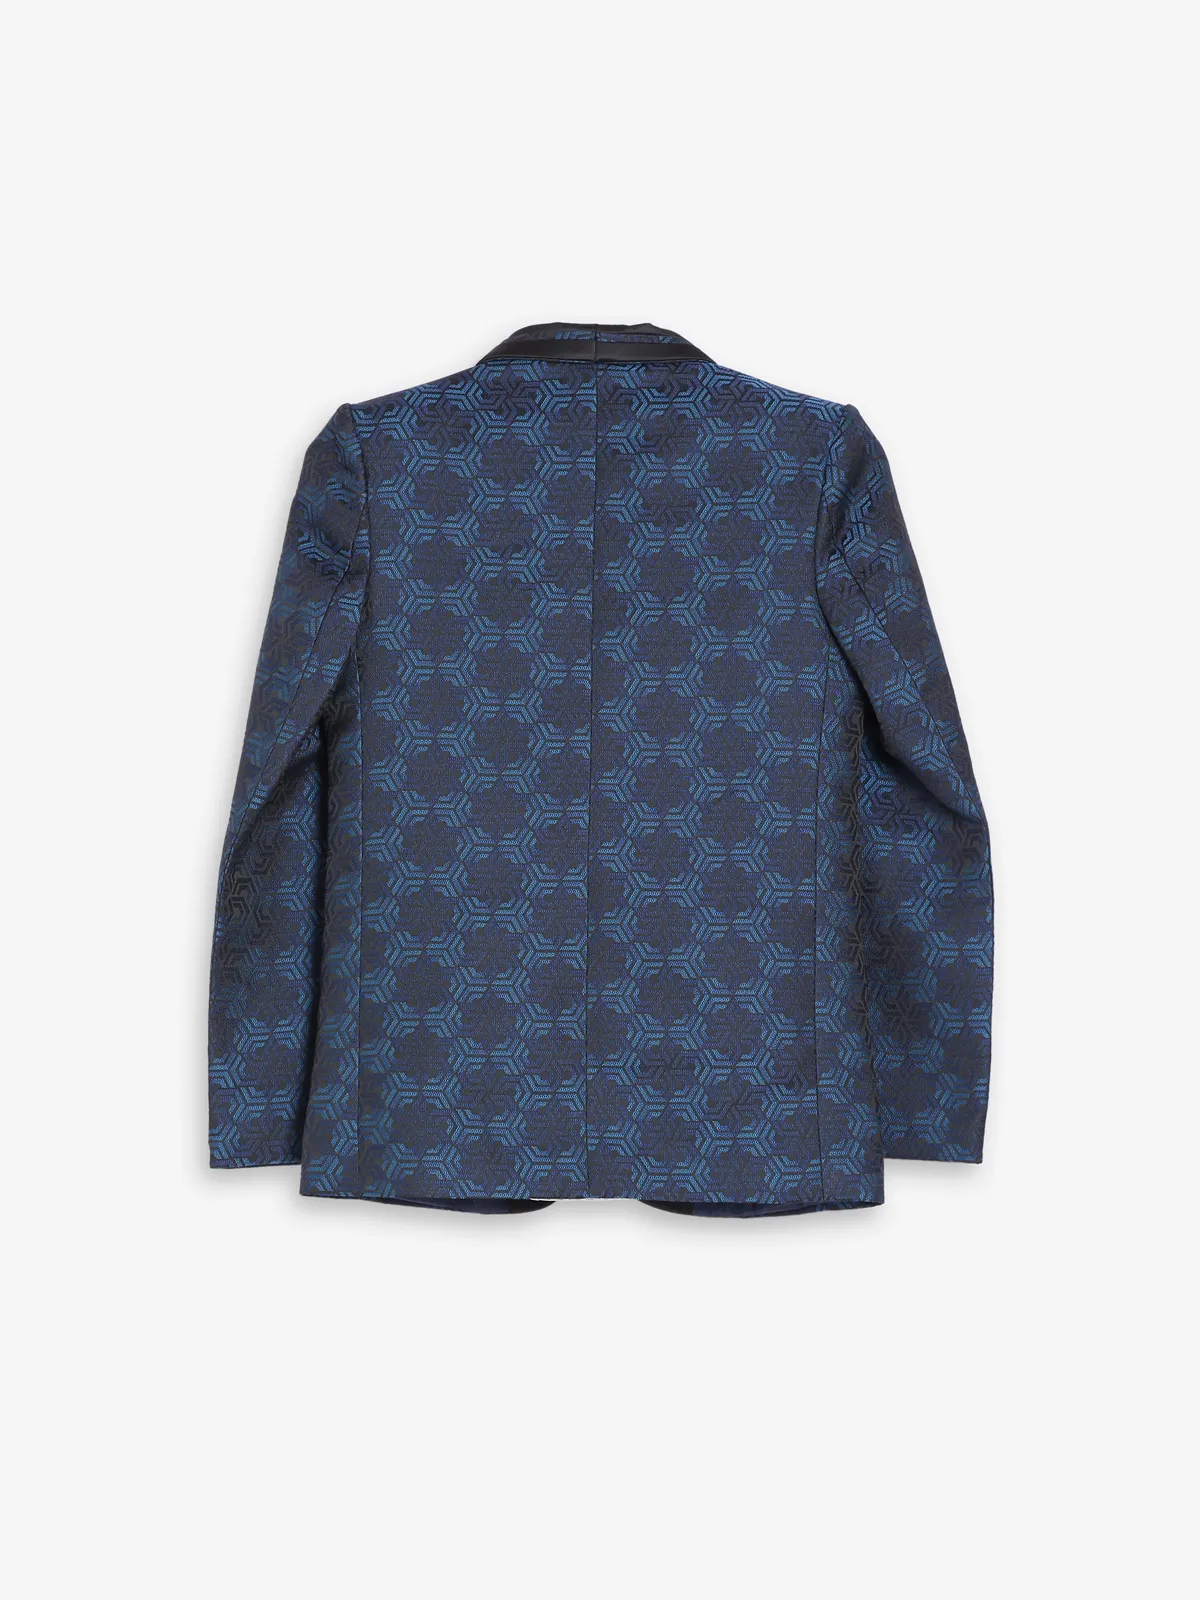 Dark blue terry rayon textuerd coat suit